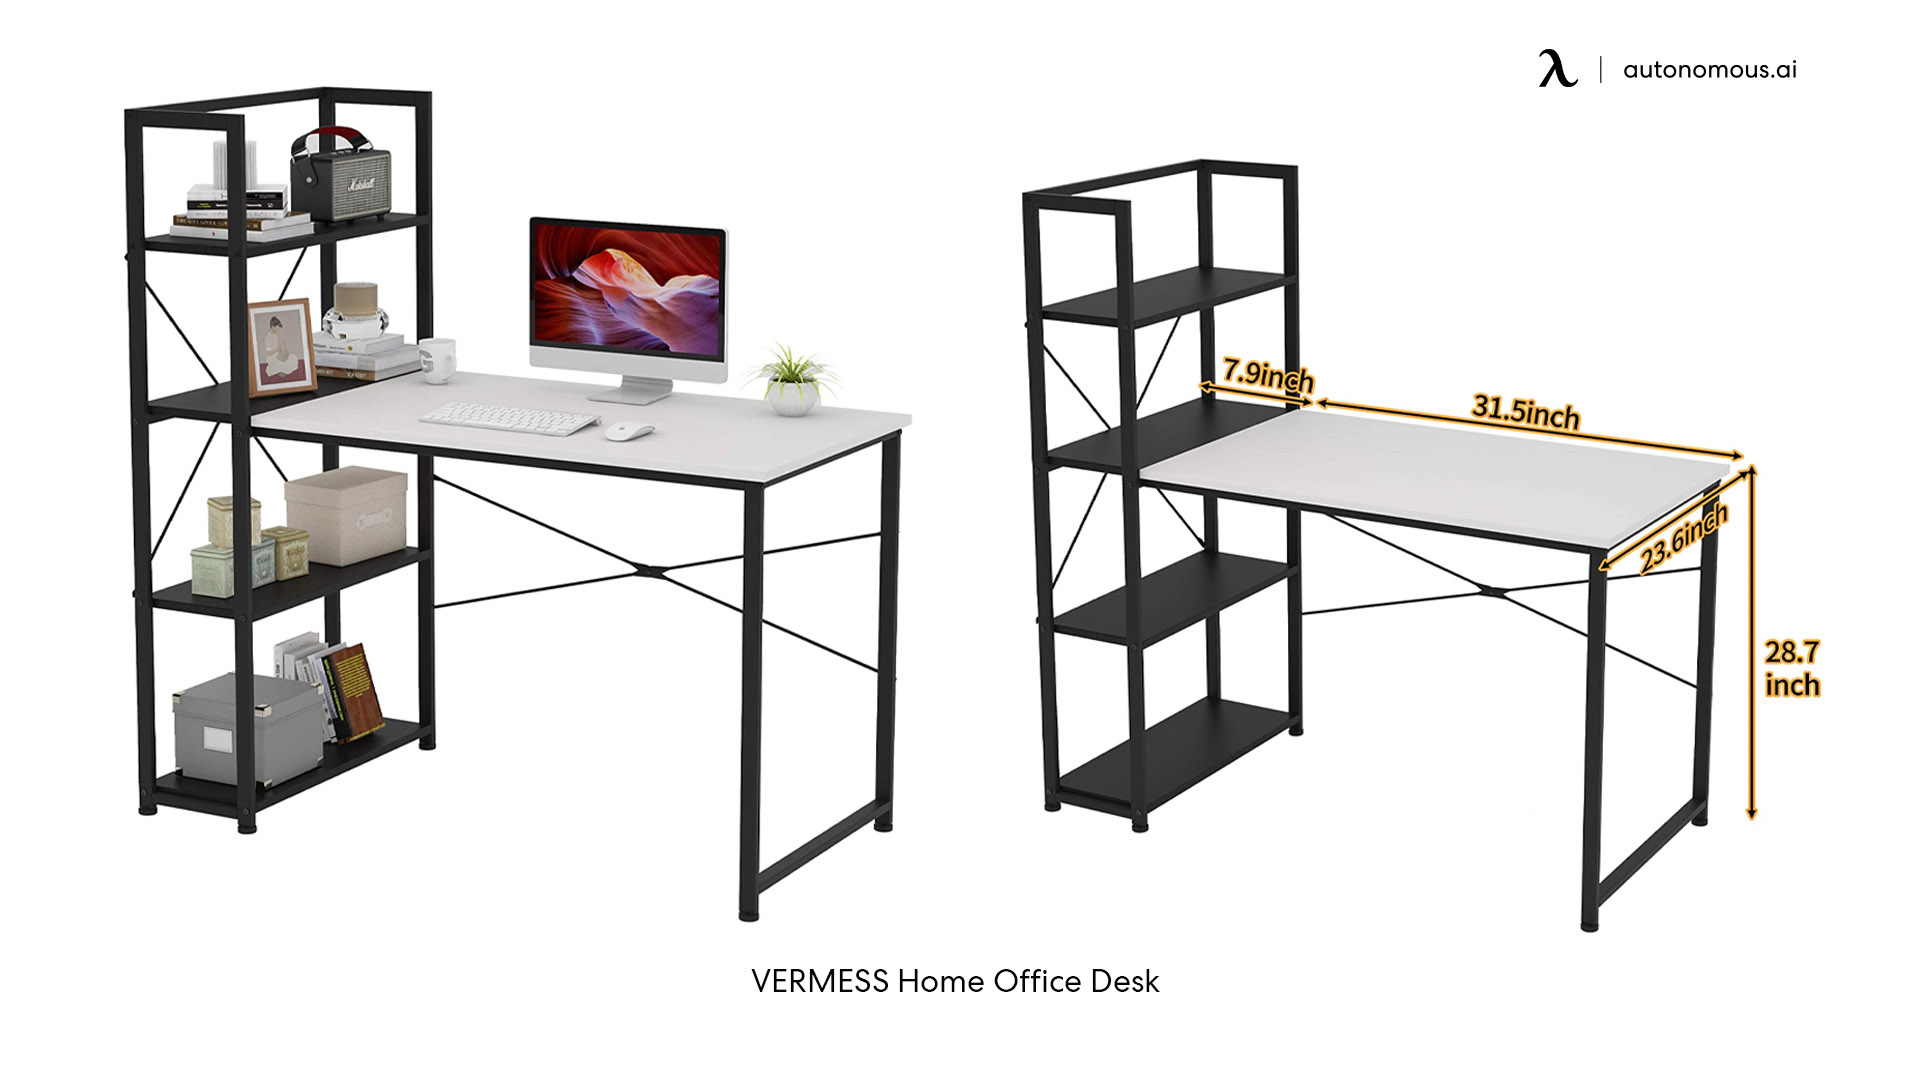 VERMESS white desk with black legs